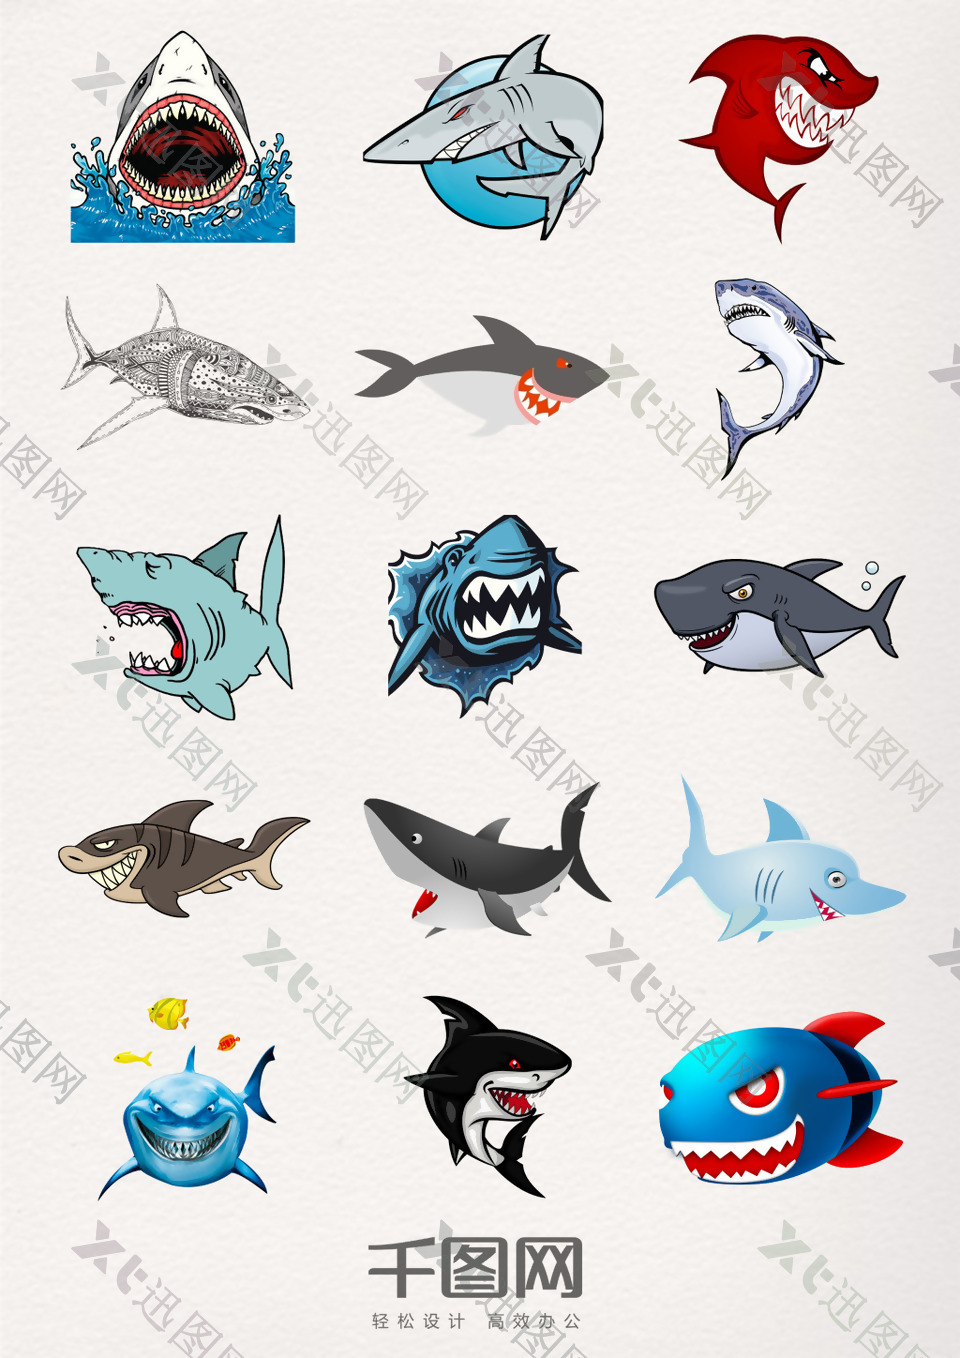 卡通版鲨鱼元素素材